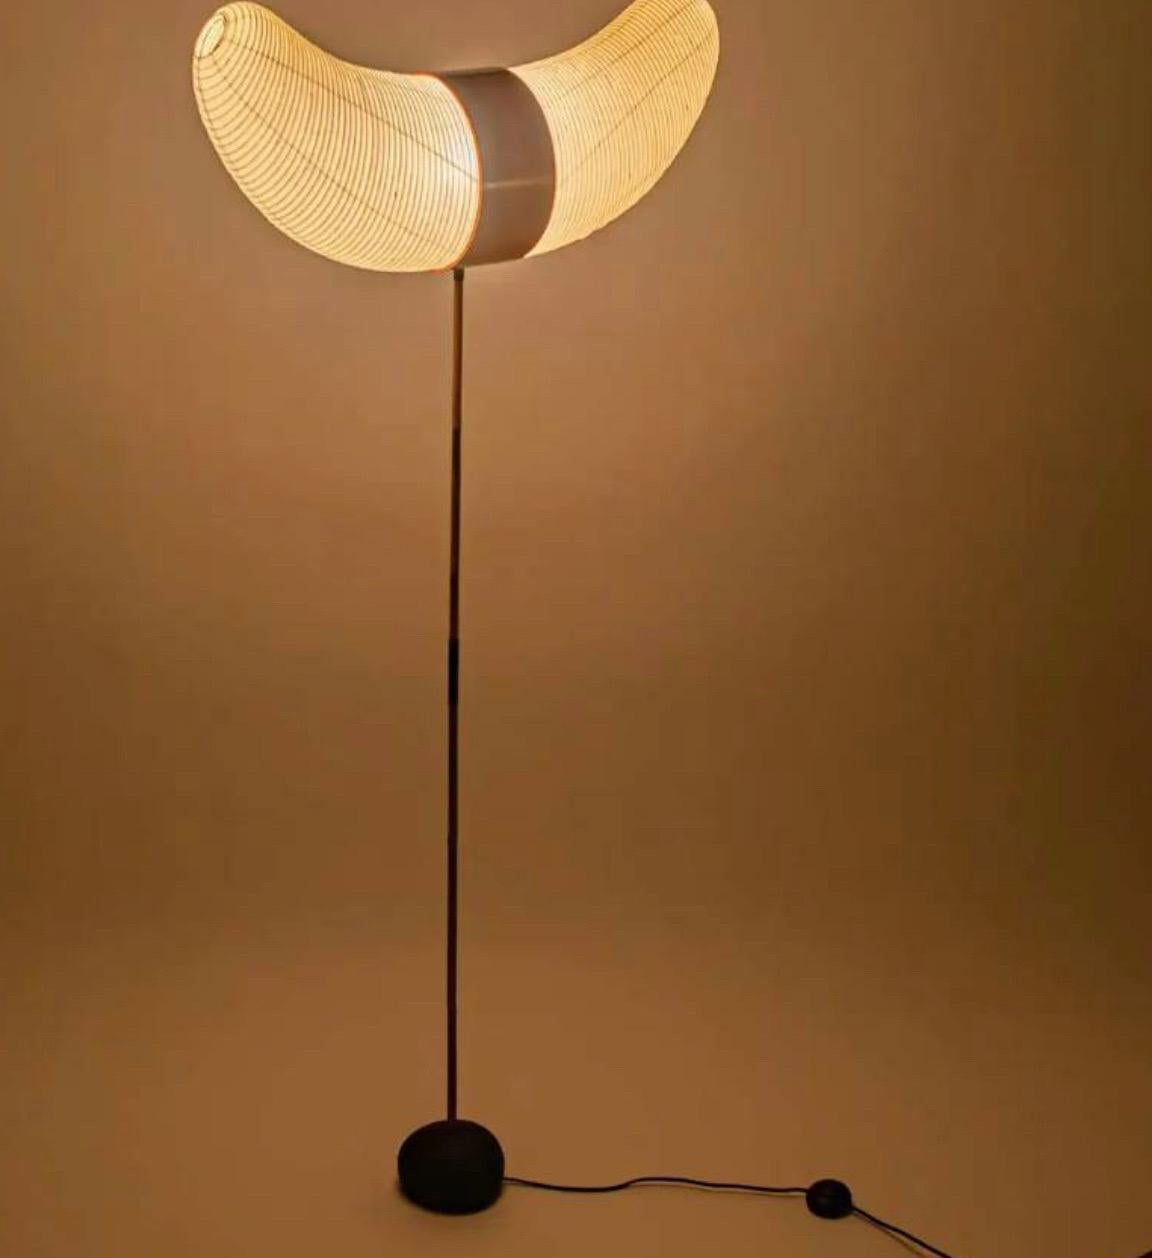 
Die Akari-Lichtskulpturen von Isamu Noguchi gelten als Ikonen des modernen Designs der 1950er Jahre. Die 1951 von Noguchi entworfenen und seit einem halben Jahrhundert vom Originalhersteller in Gifu, Japan, handgefertigten Papierlaternen sind eine